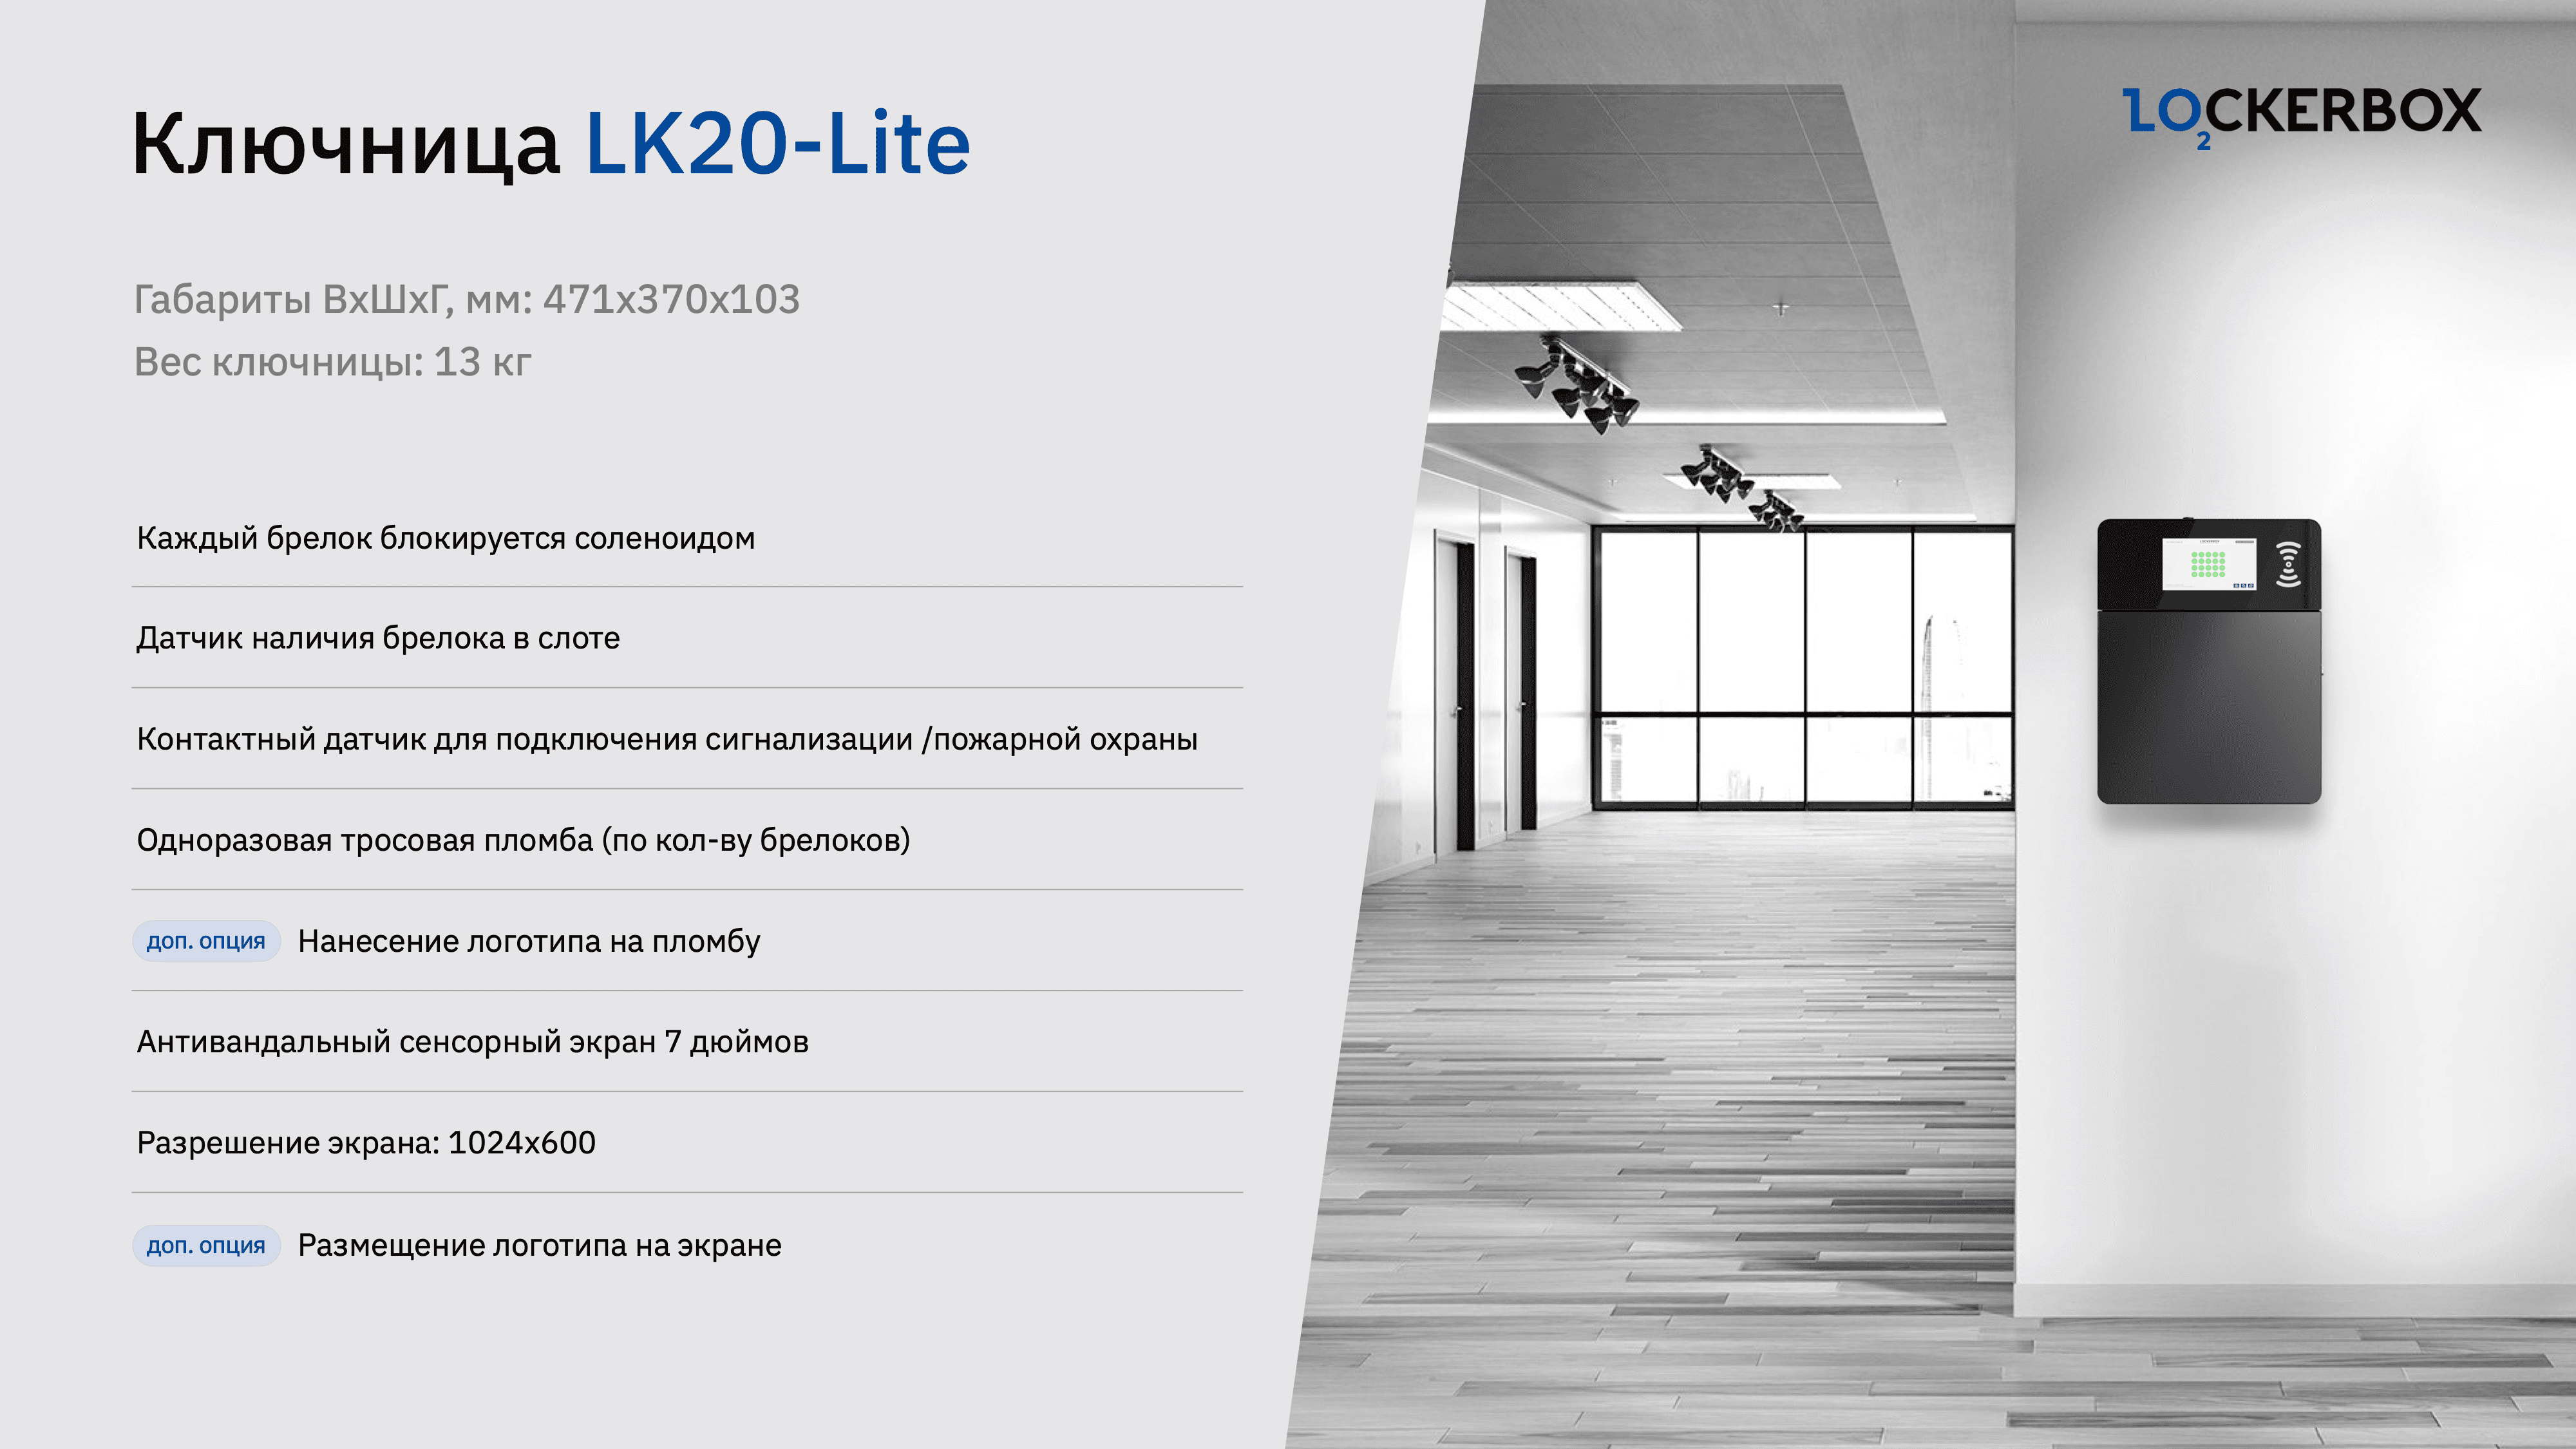 Электронная ключница LK20-Lite